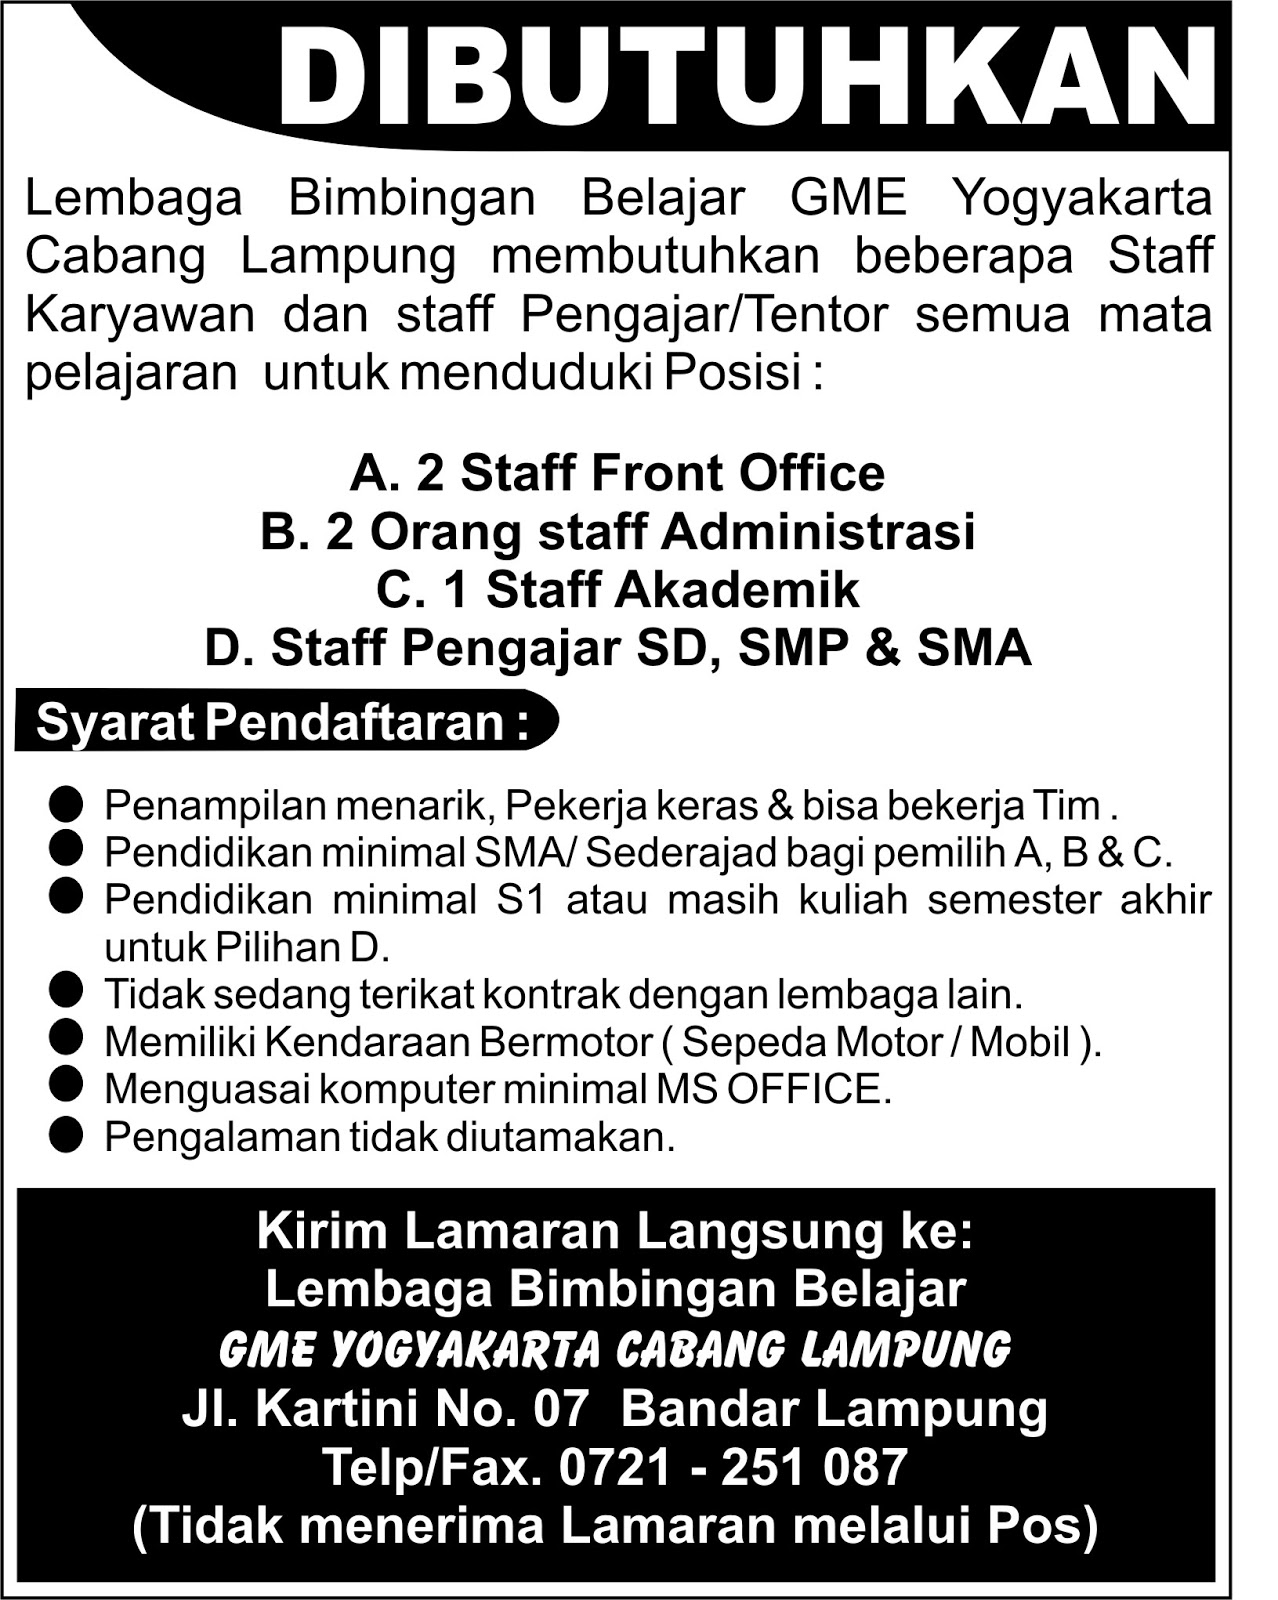 Job in Lampung GME Yogyakarta Cabang Lampung